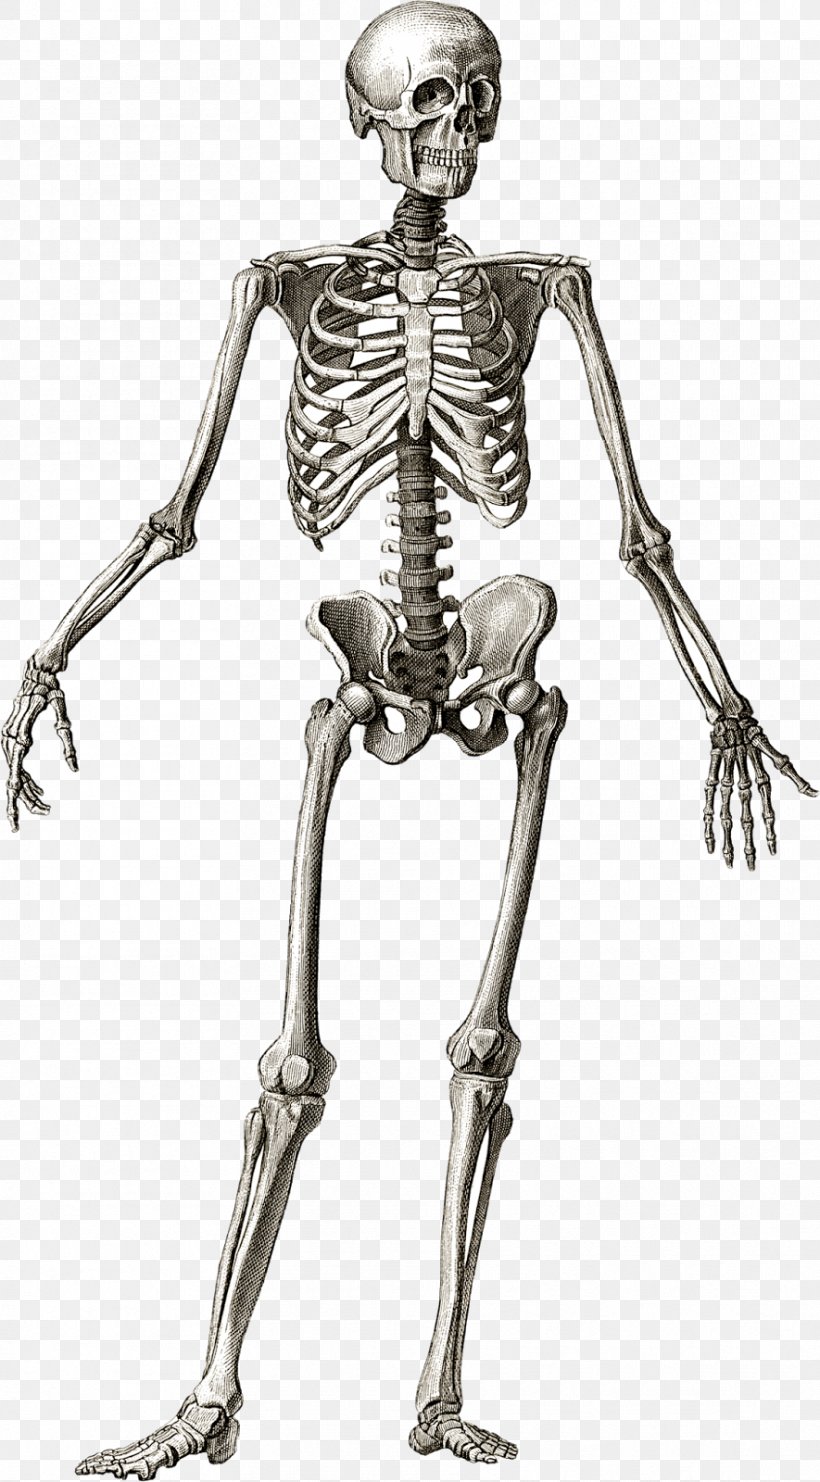 Human Skeleton Anatomy Bone Human Body, PNG, 885x1600px, Human Skeleton, Anatomy, Arm, Black And White, Bone Download Free